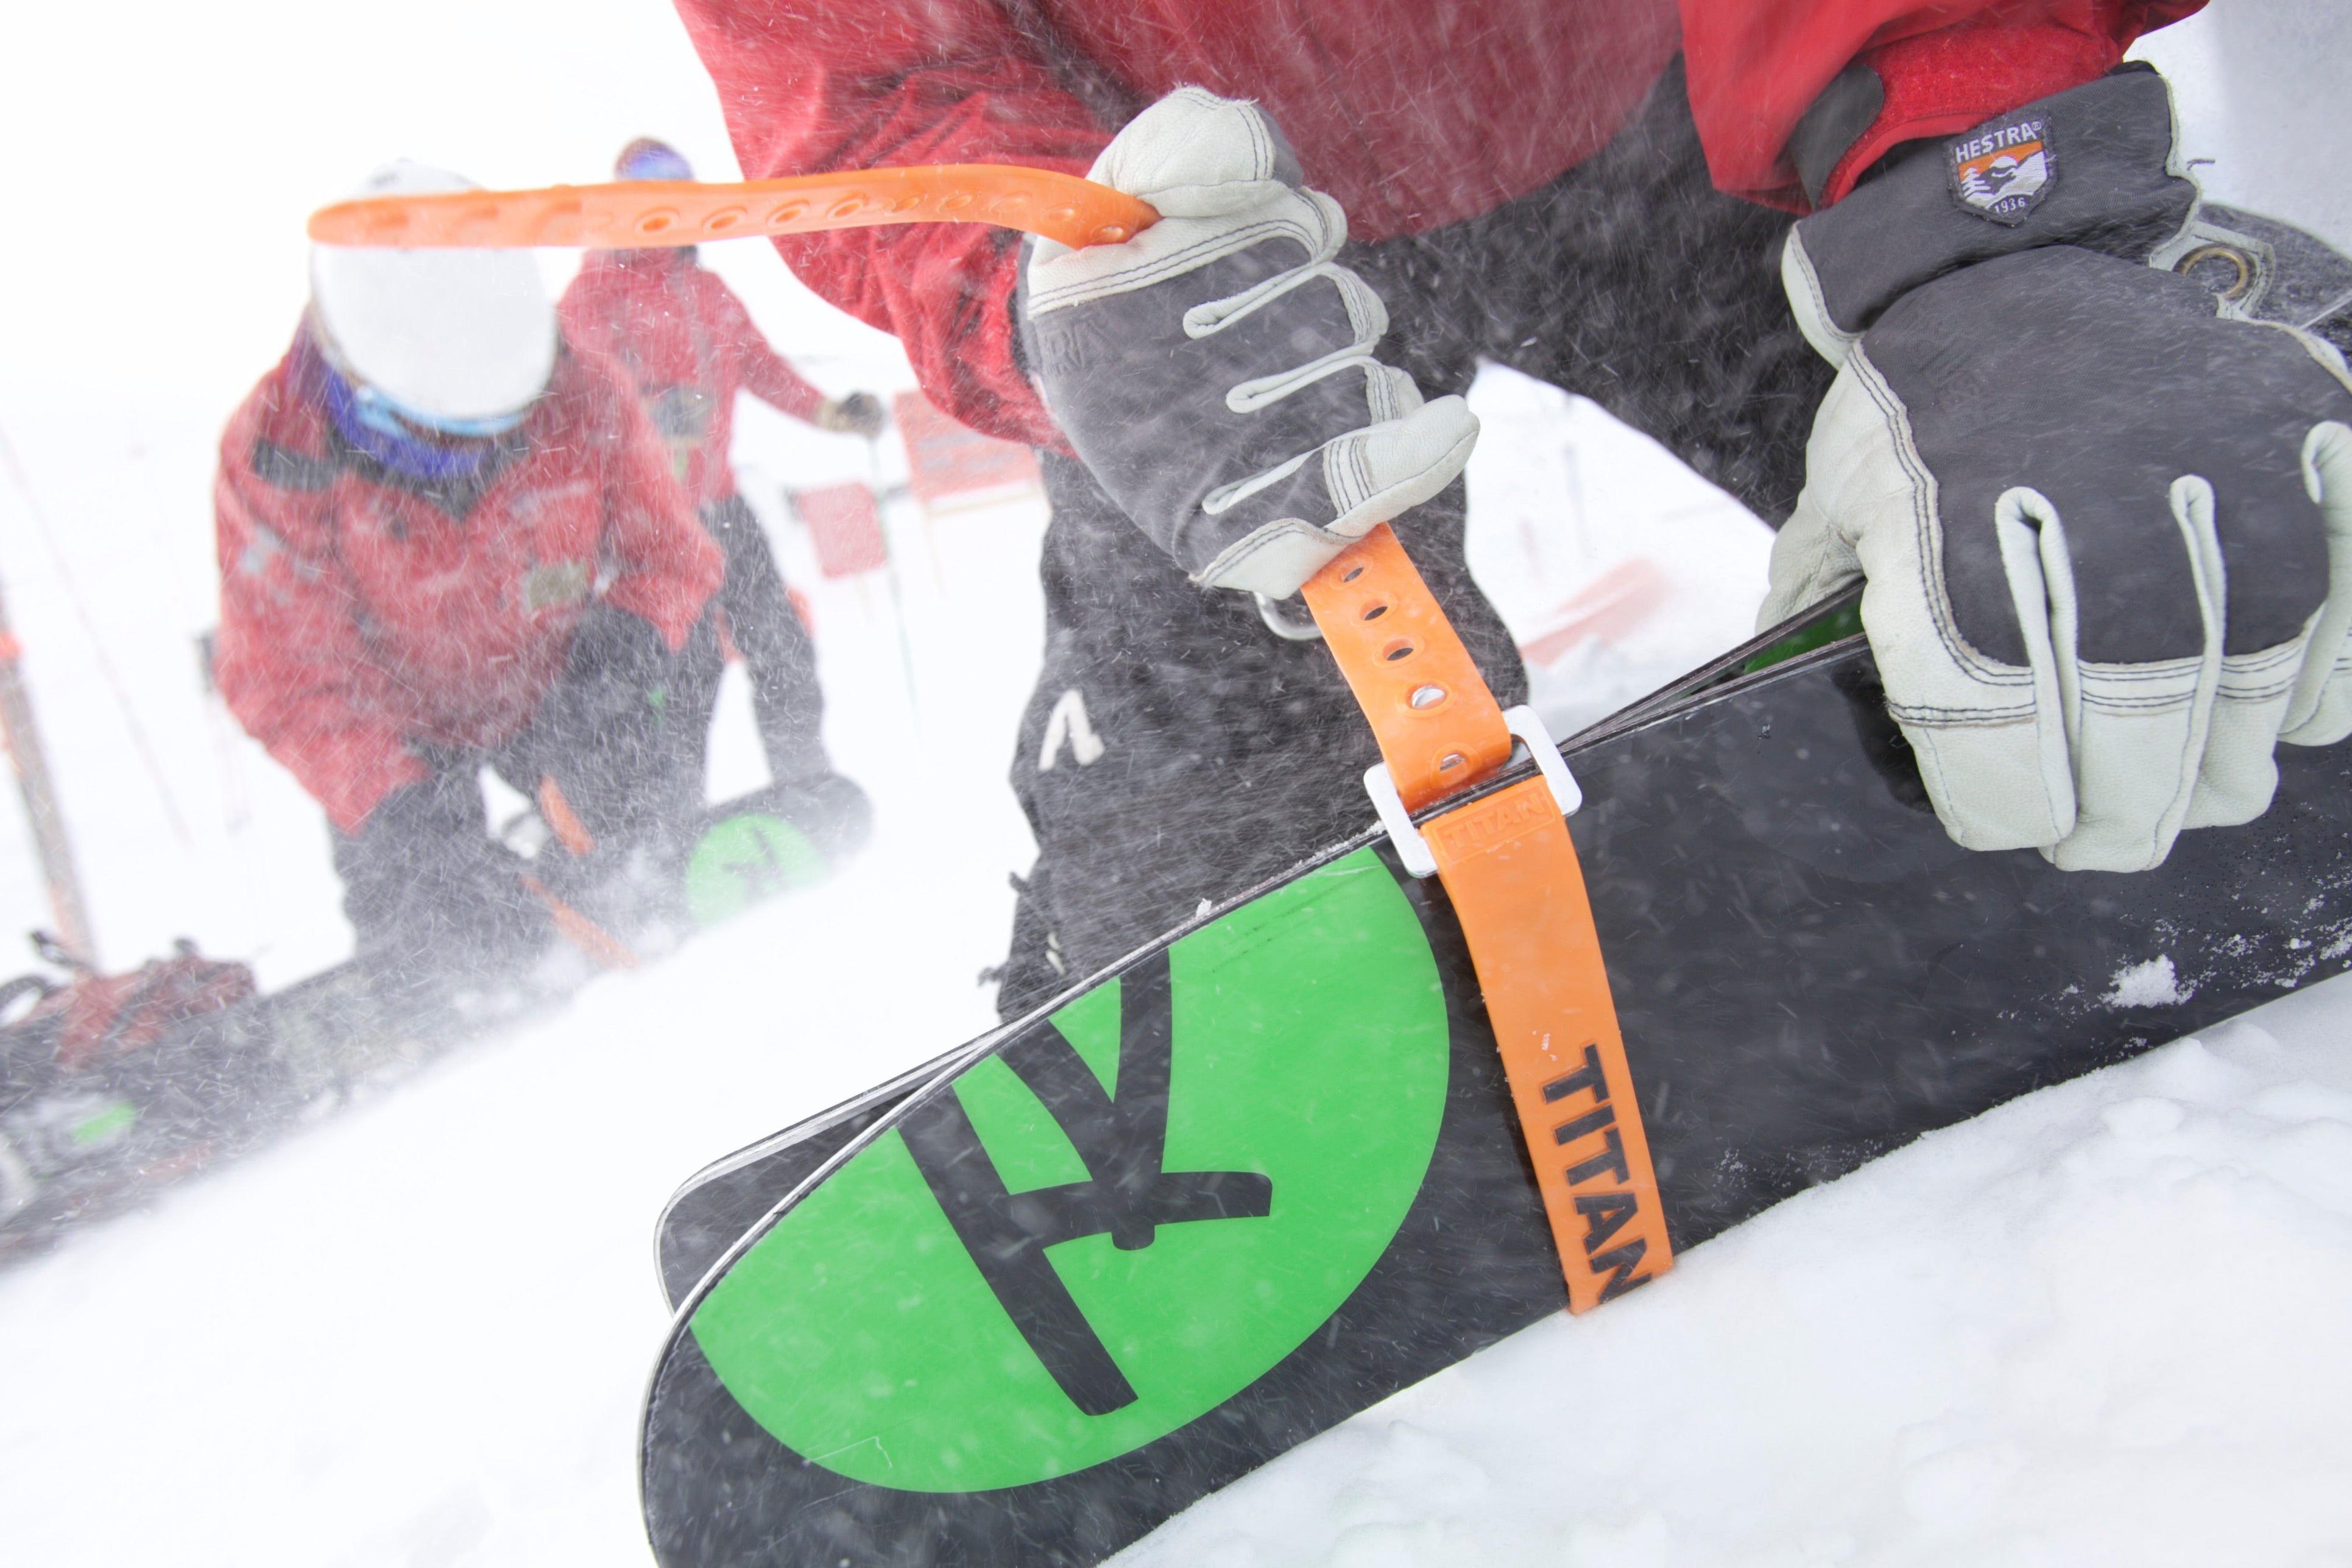 Ski Ties - keep your skis together - Ski Market